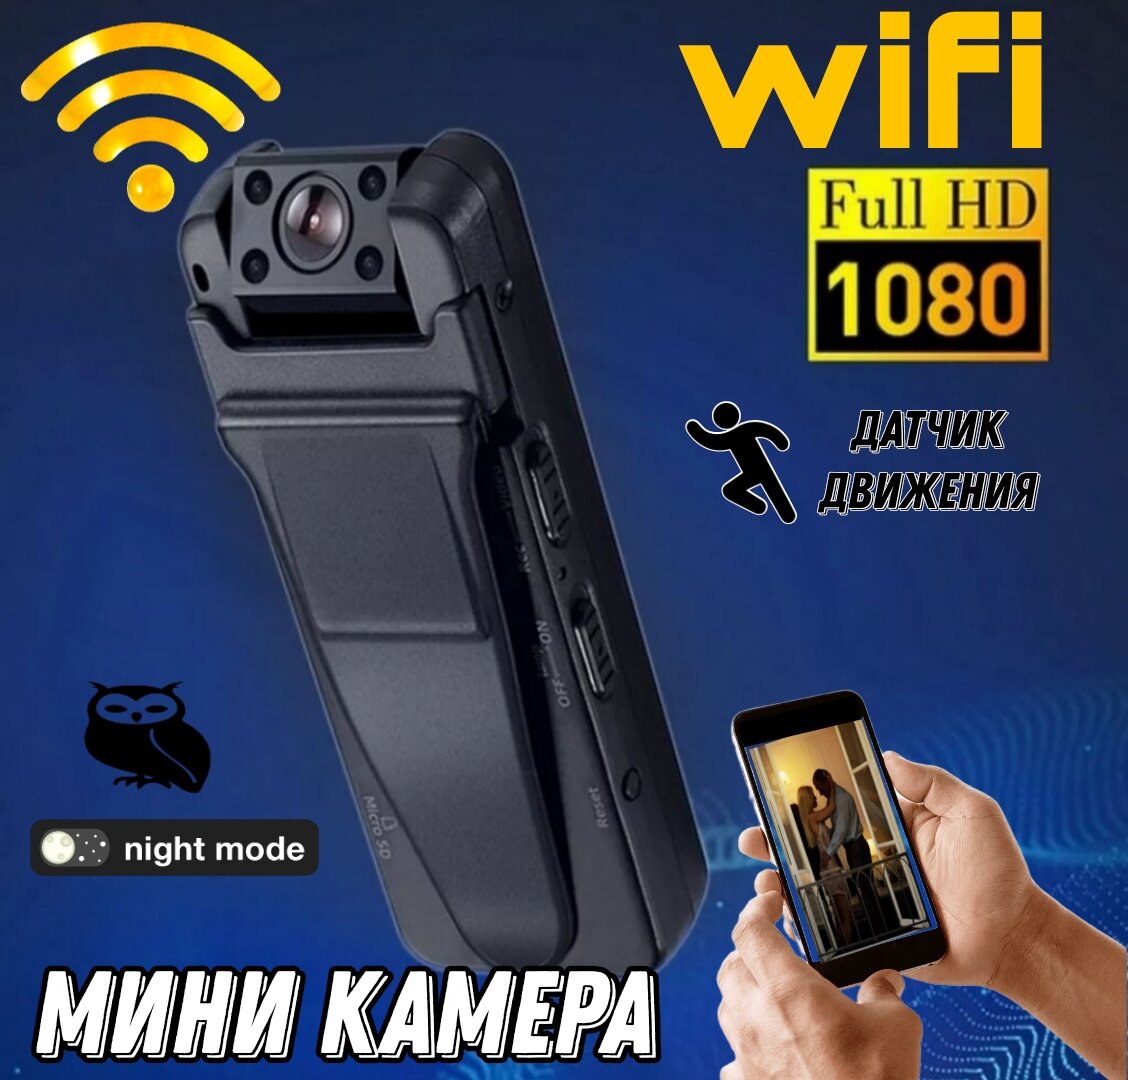 WiFi экшн камера с датчиком движения